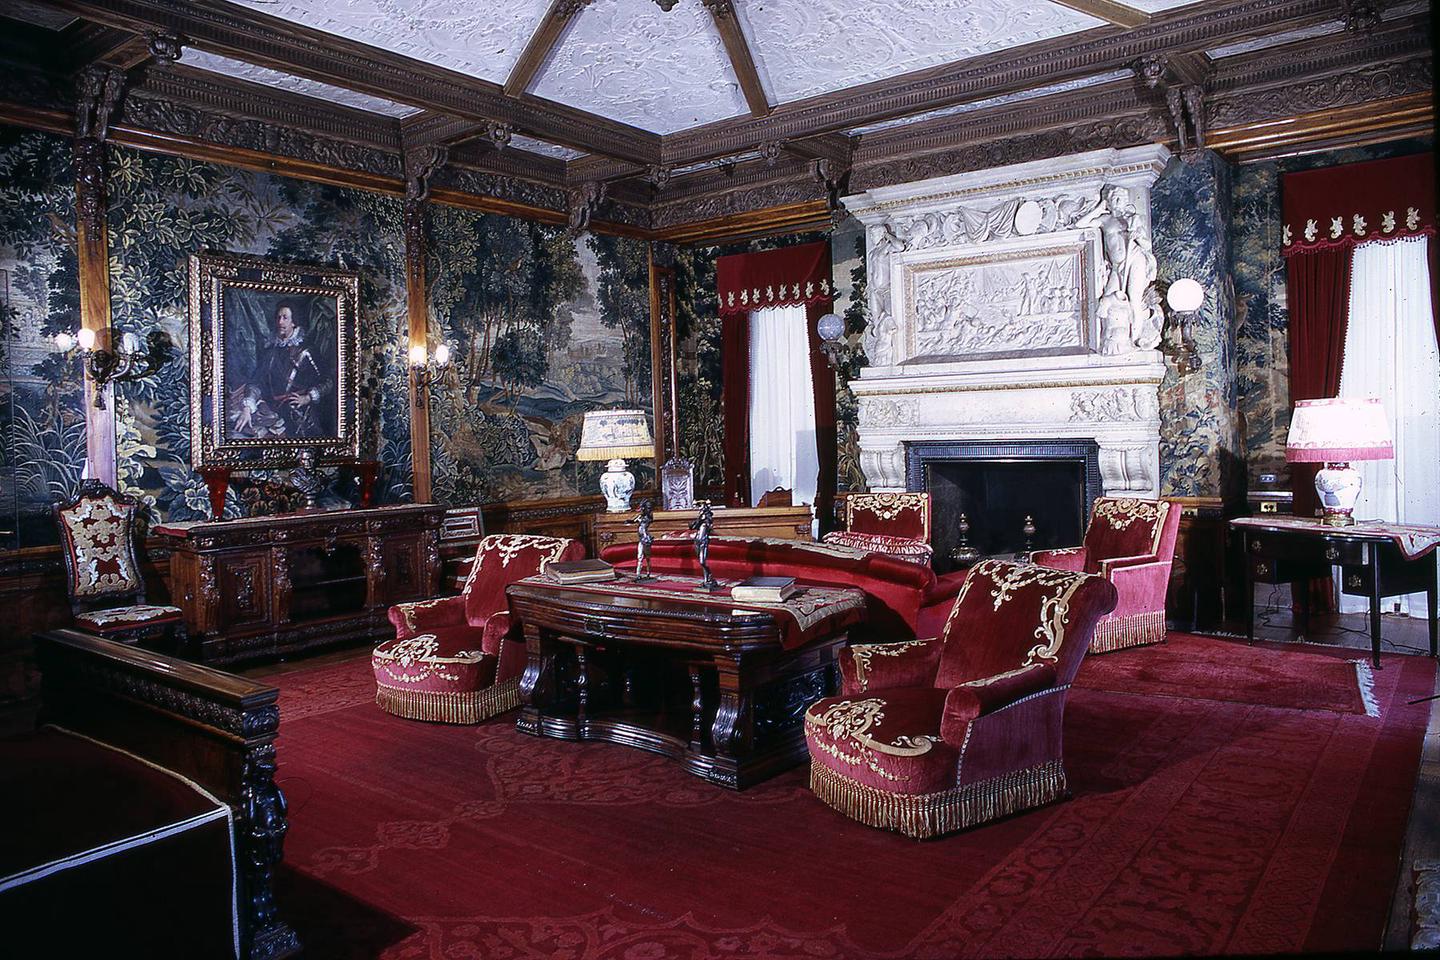 Vanderbilt interior room